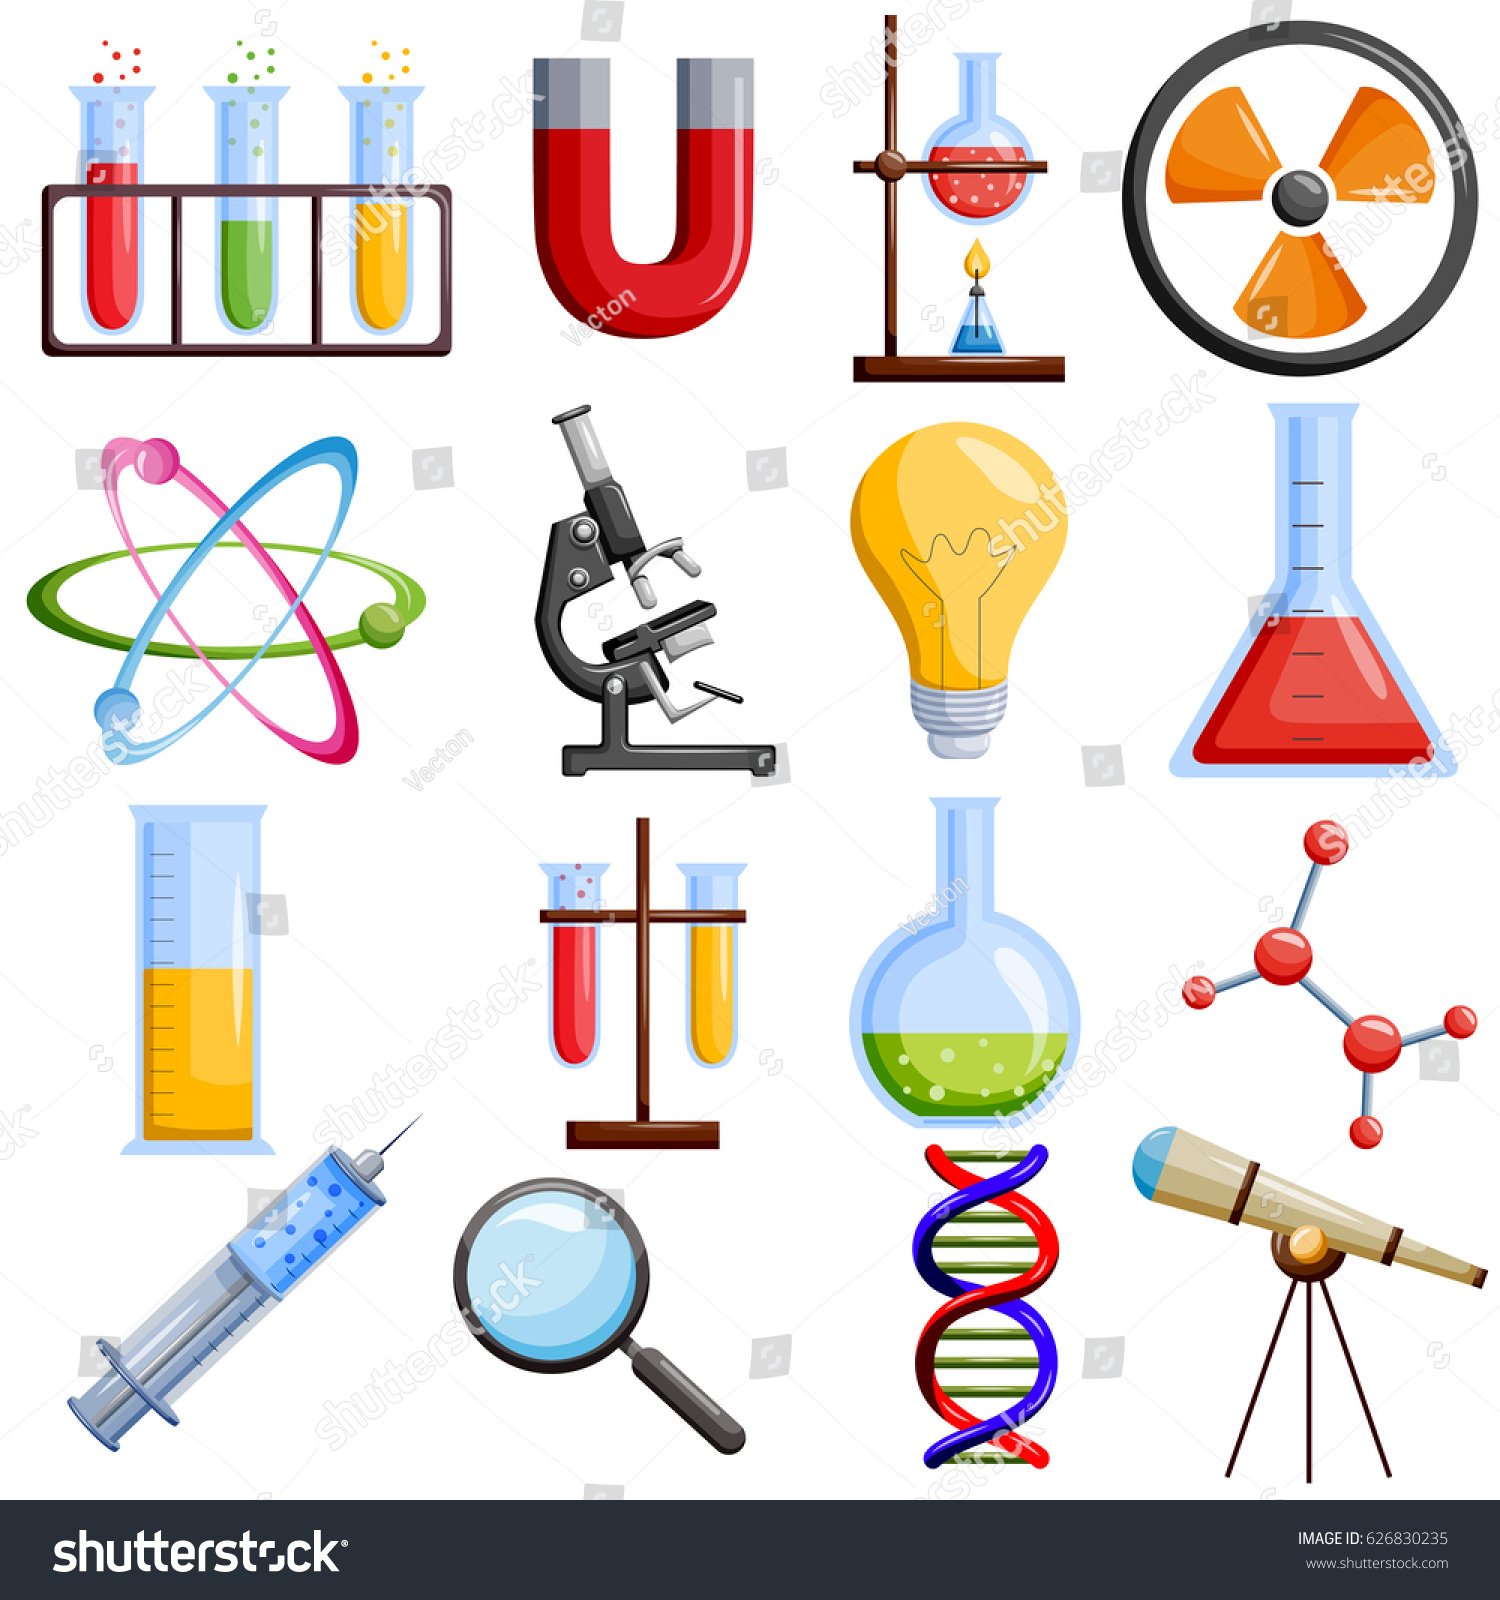 1,218,954 Science equipment Images, Stock Photos & Vectors | Shutterstock